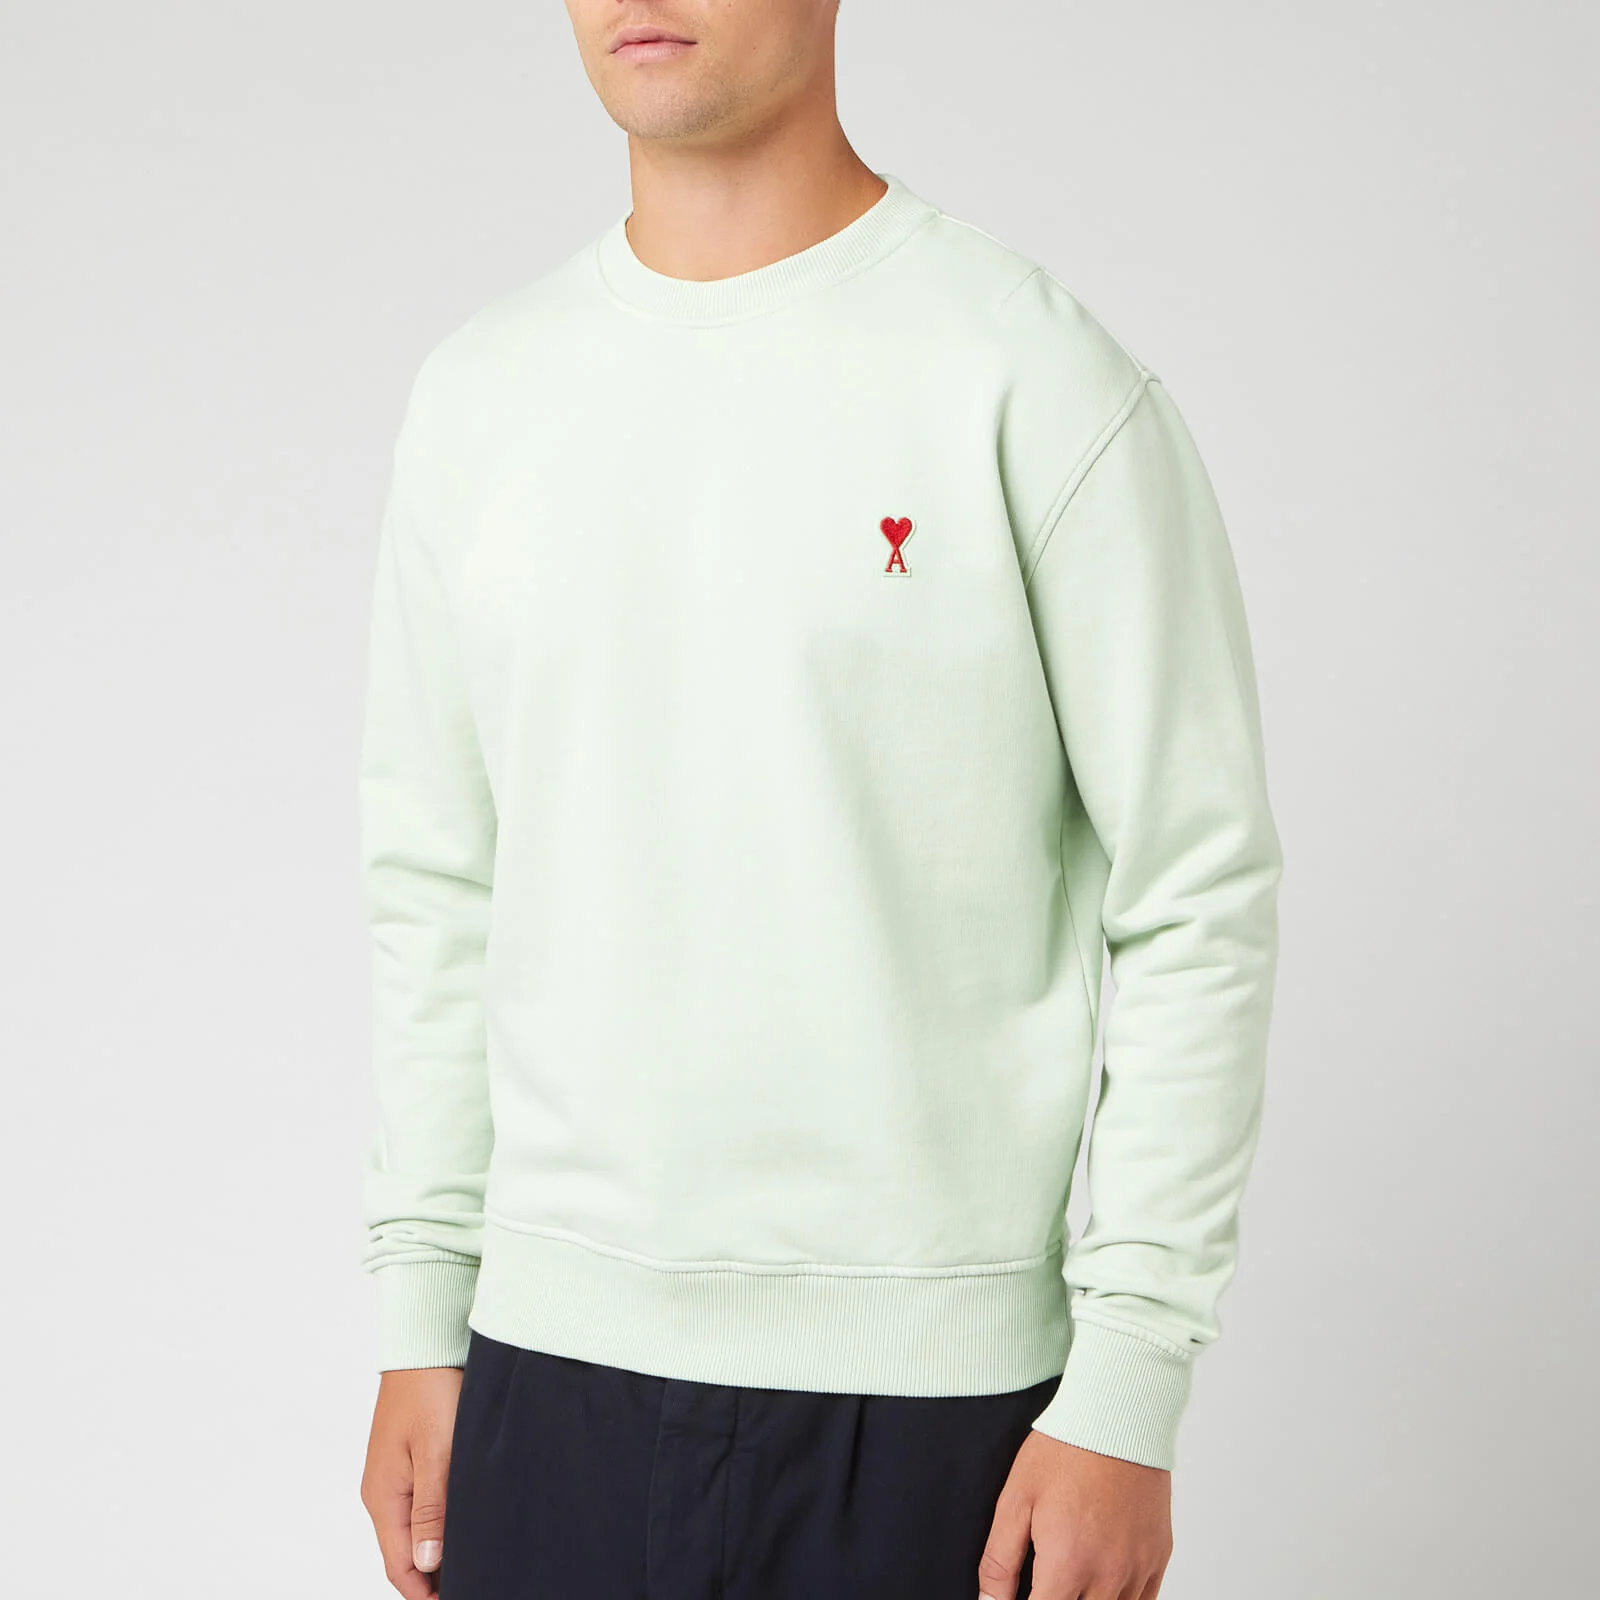 AMI Men's Heart Sweatshirt - Vert Pale Image 1